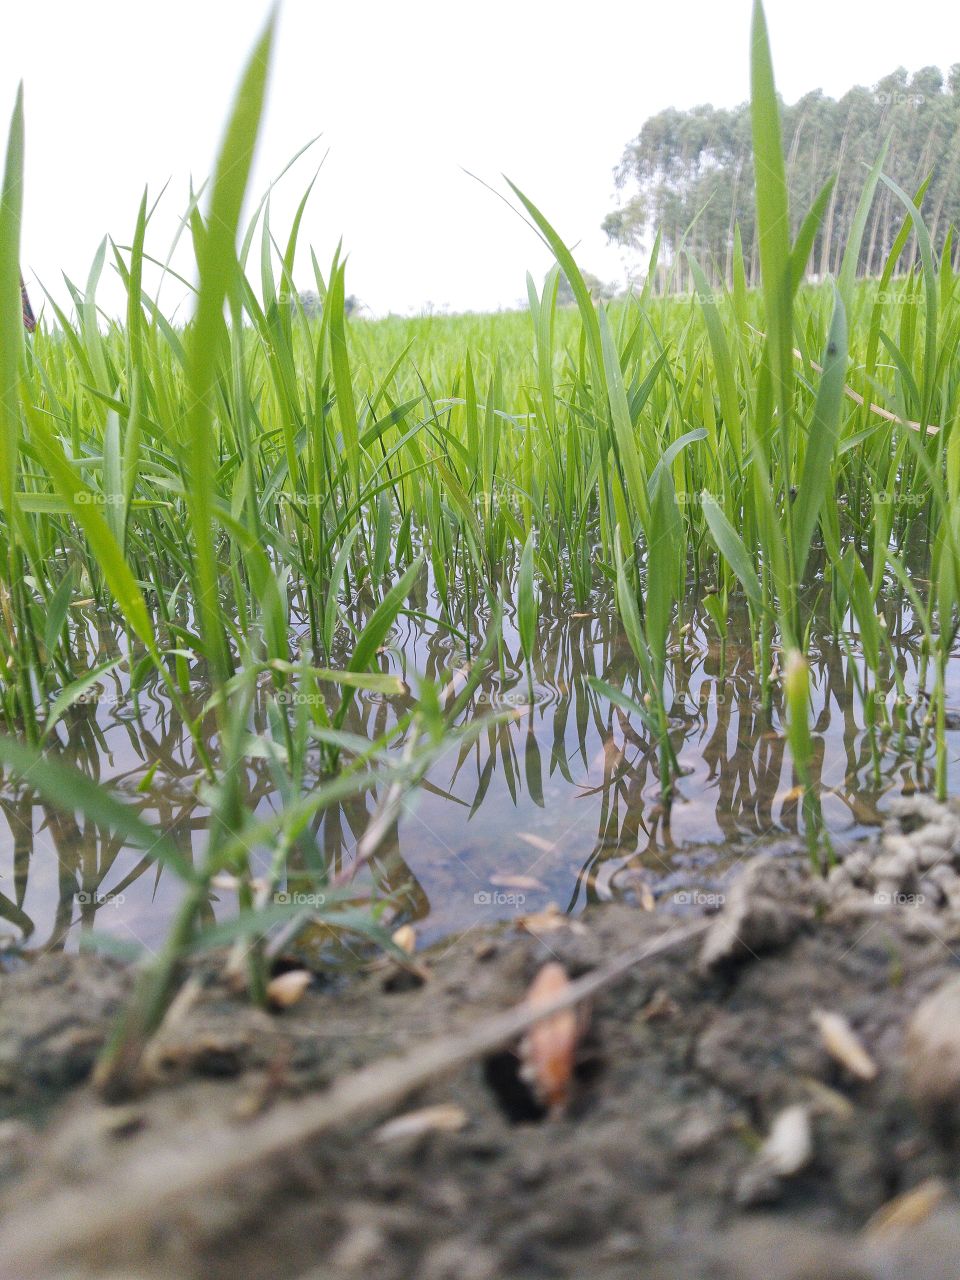 rice seeds nursery growing in water field